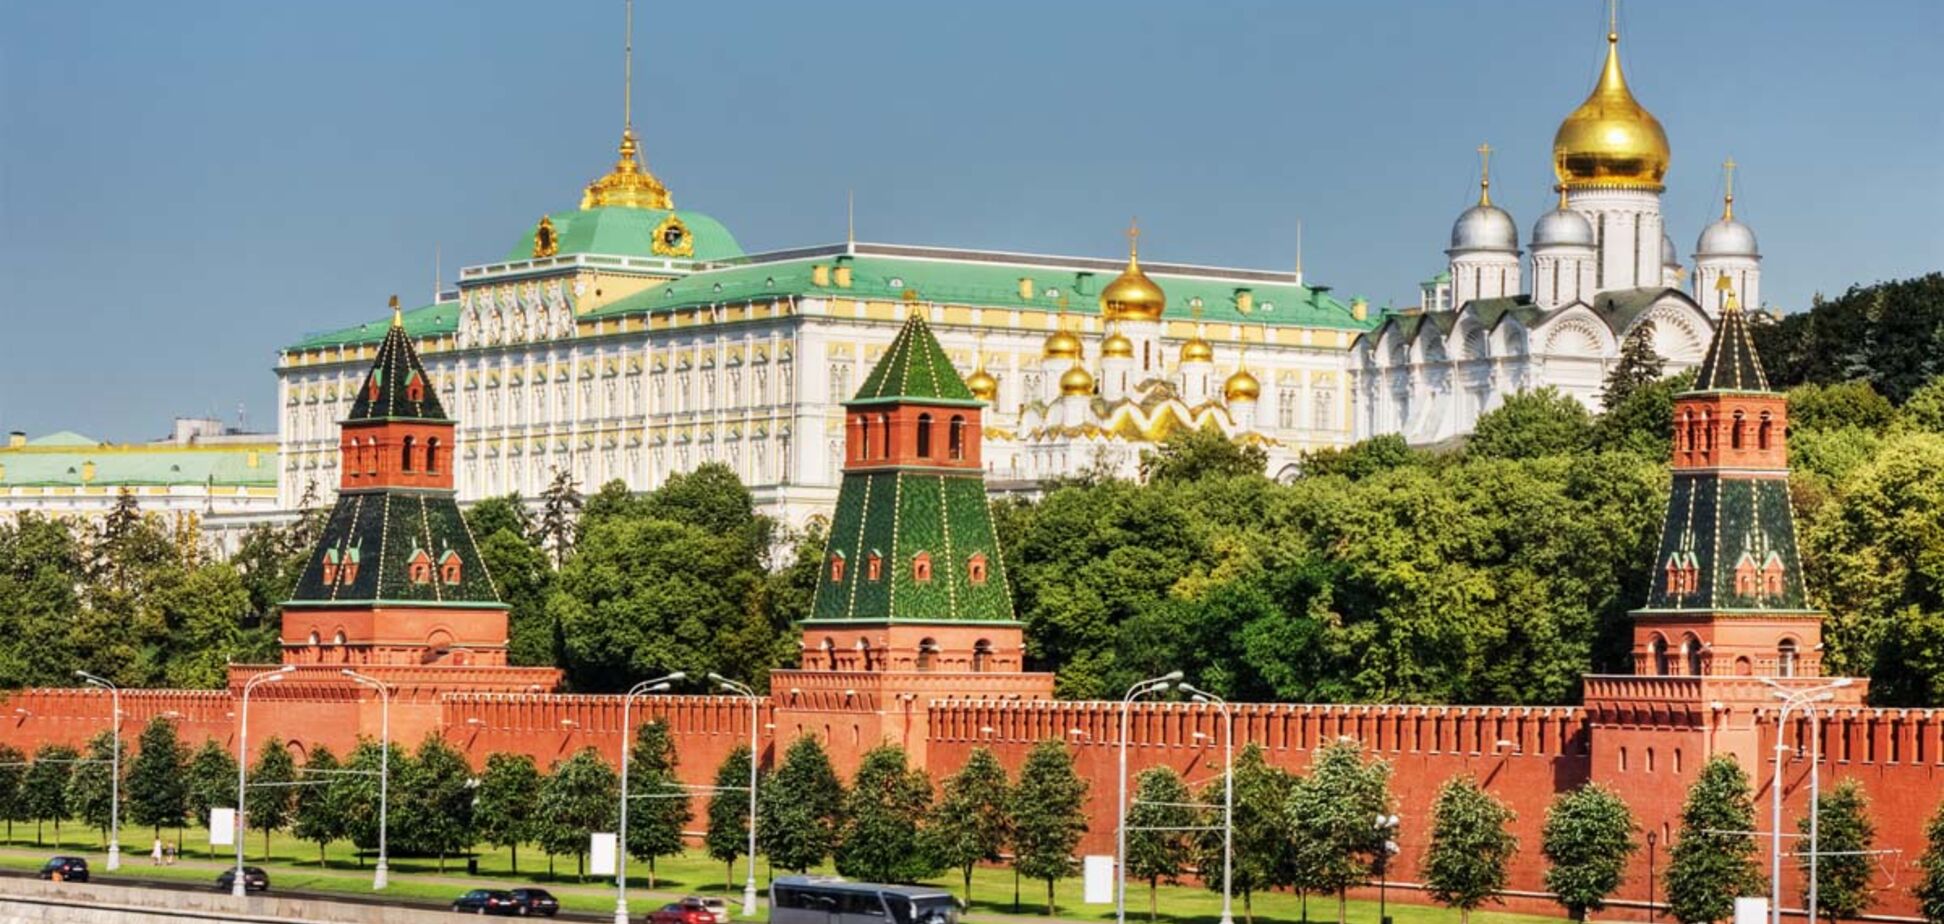 Кремль принялся лихорадочно скупать облигации и валюту США